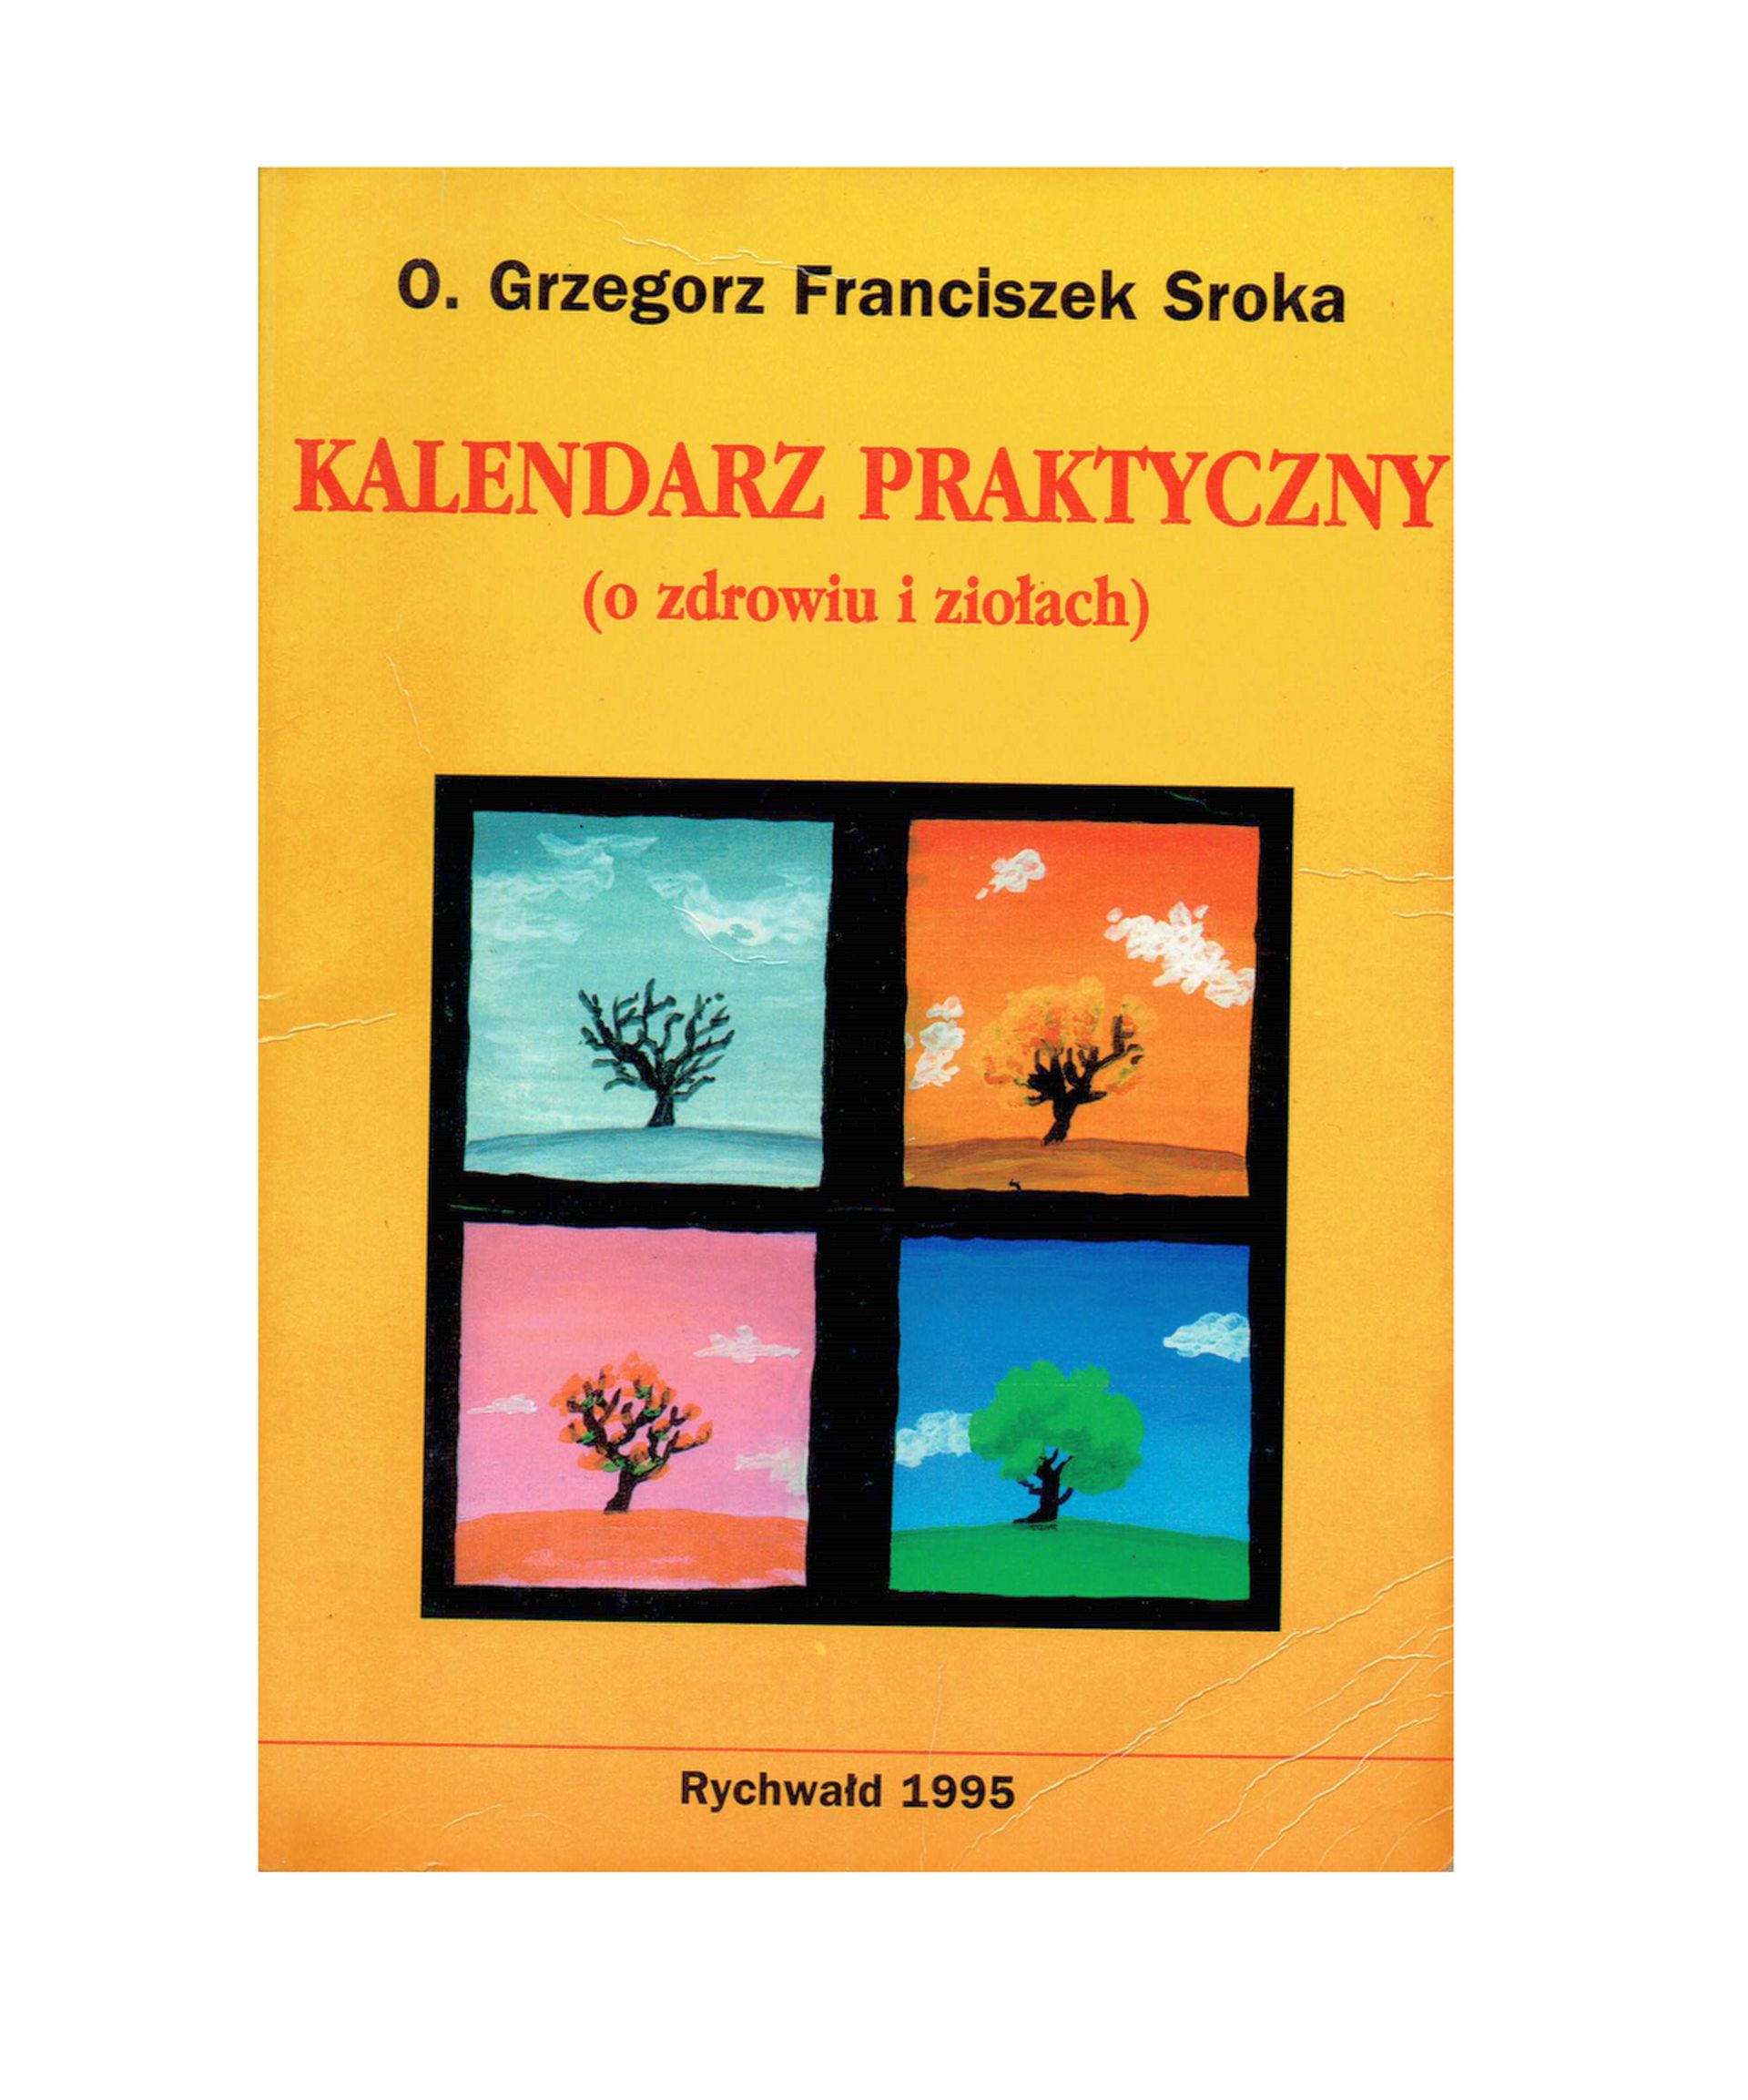 Poradnik ziołowy kalendarz praktyczny Ojca Grzegorza